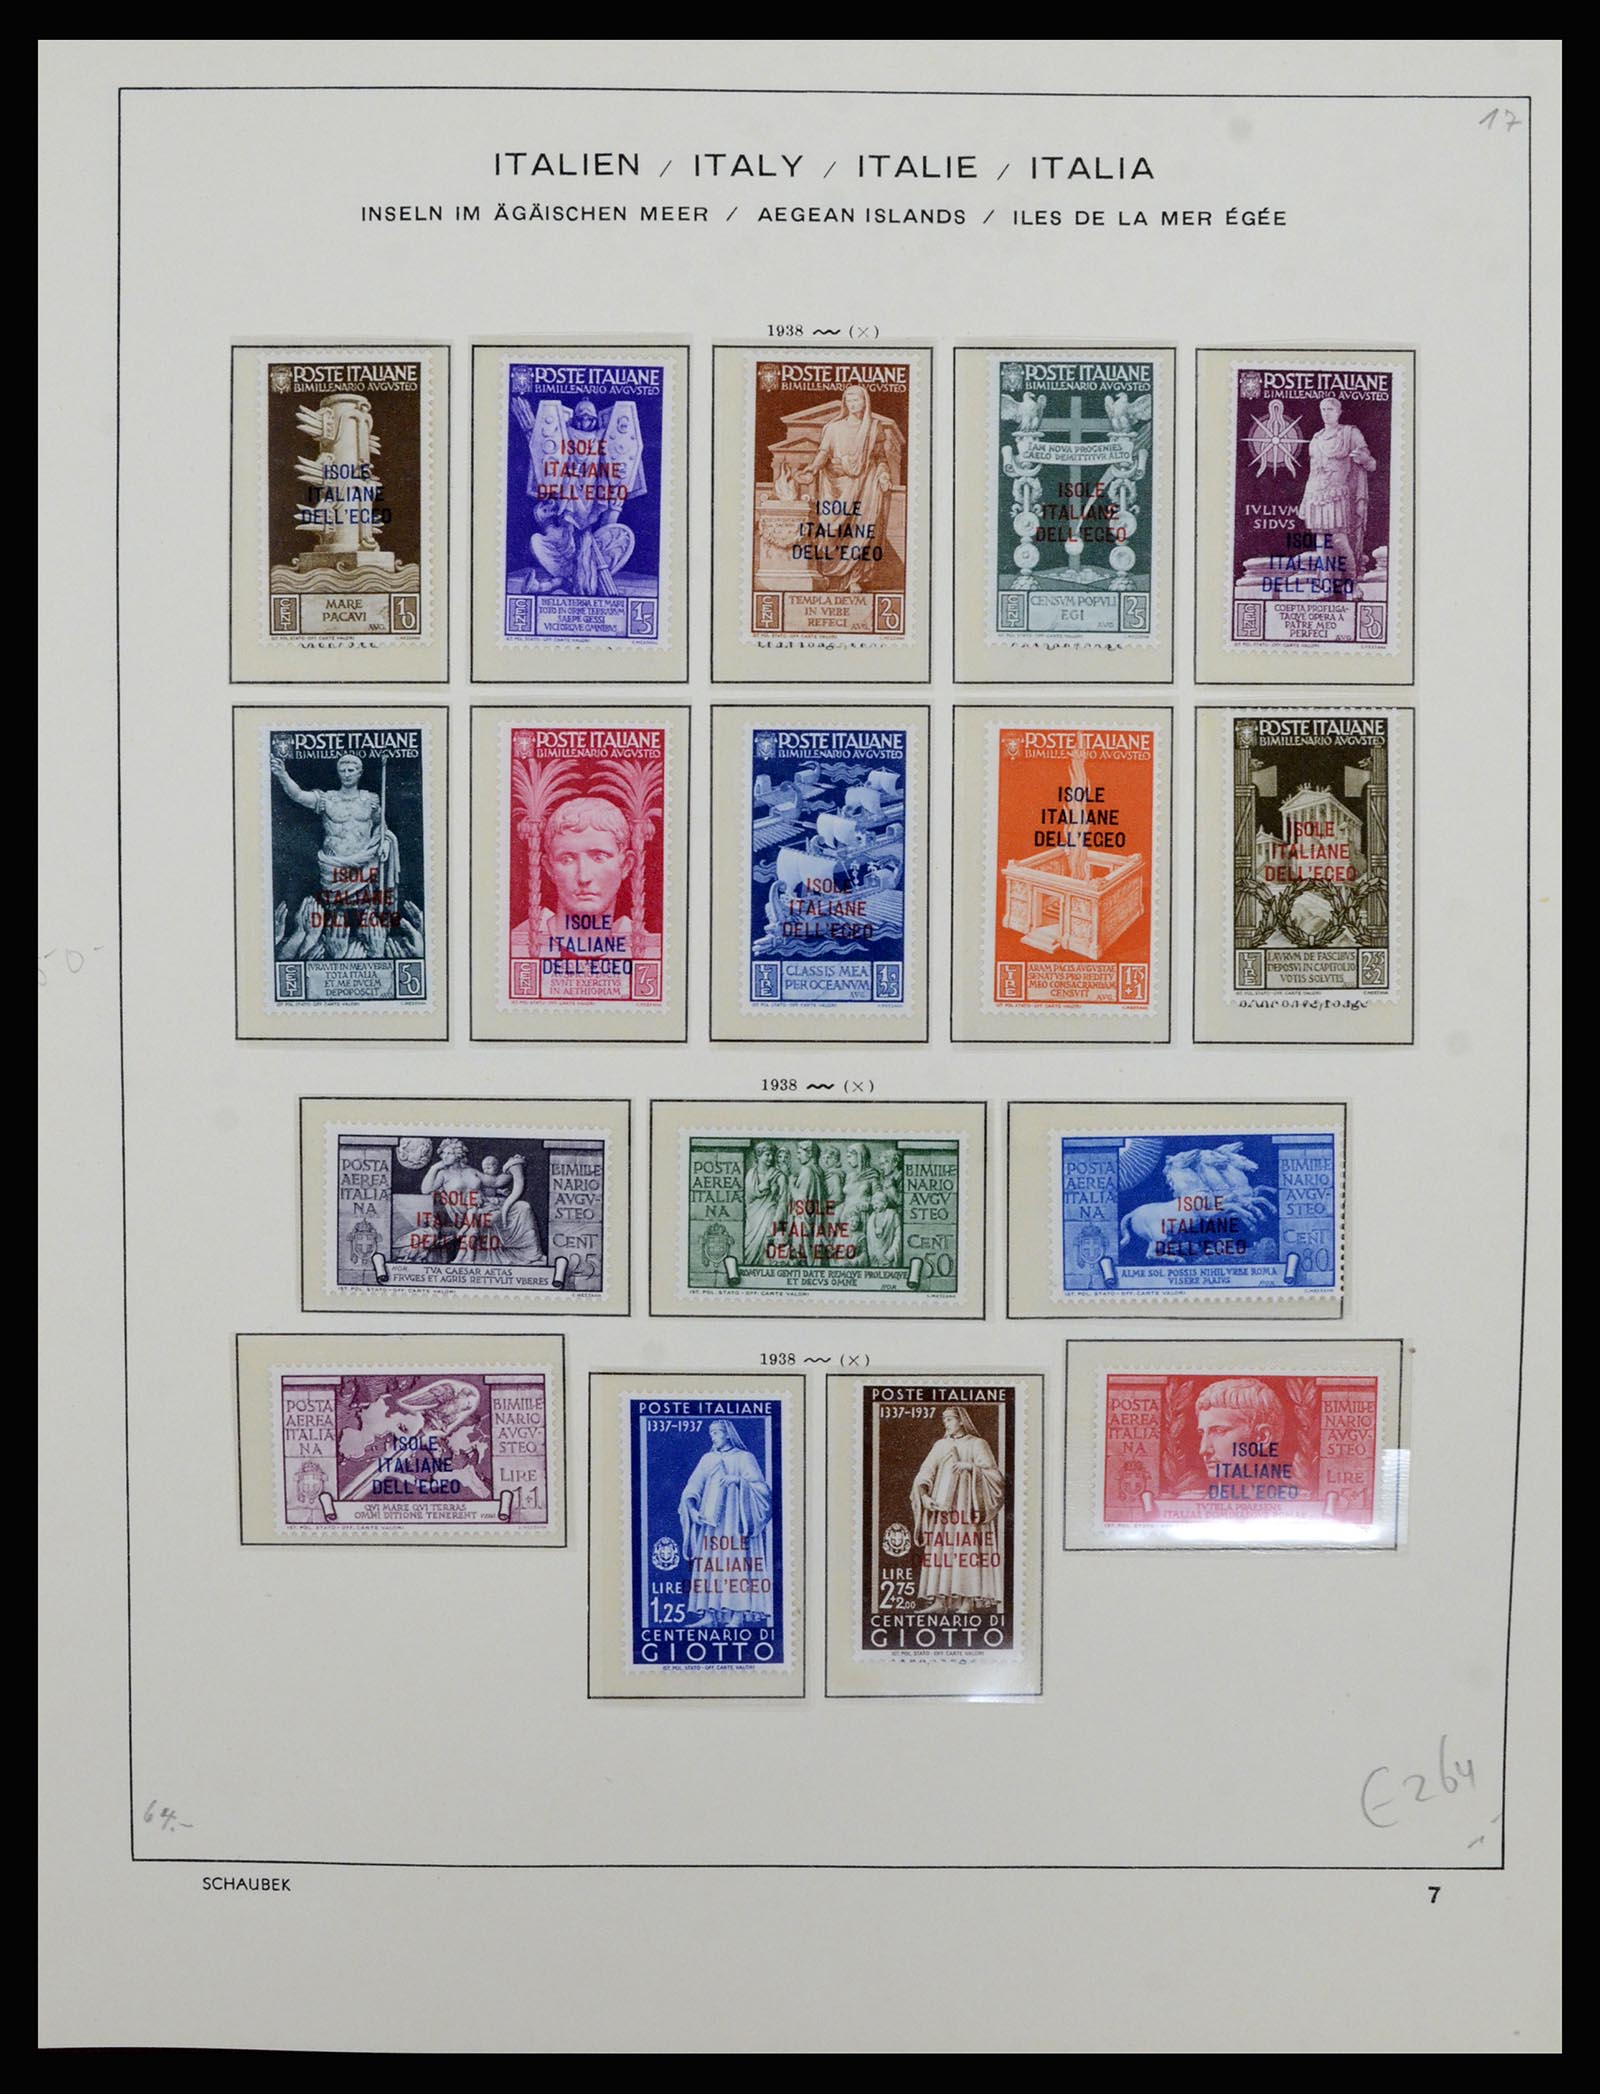 36577 033 - Stamp collection 36577 Italiaanse gebieden 1870-1940.